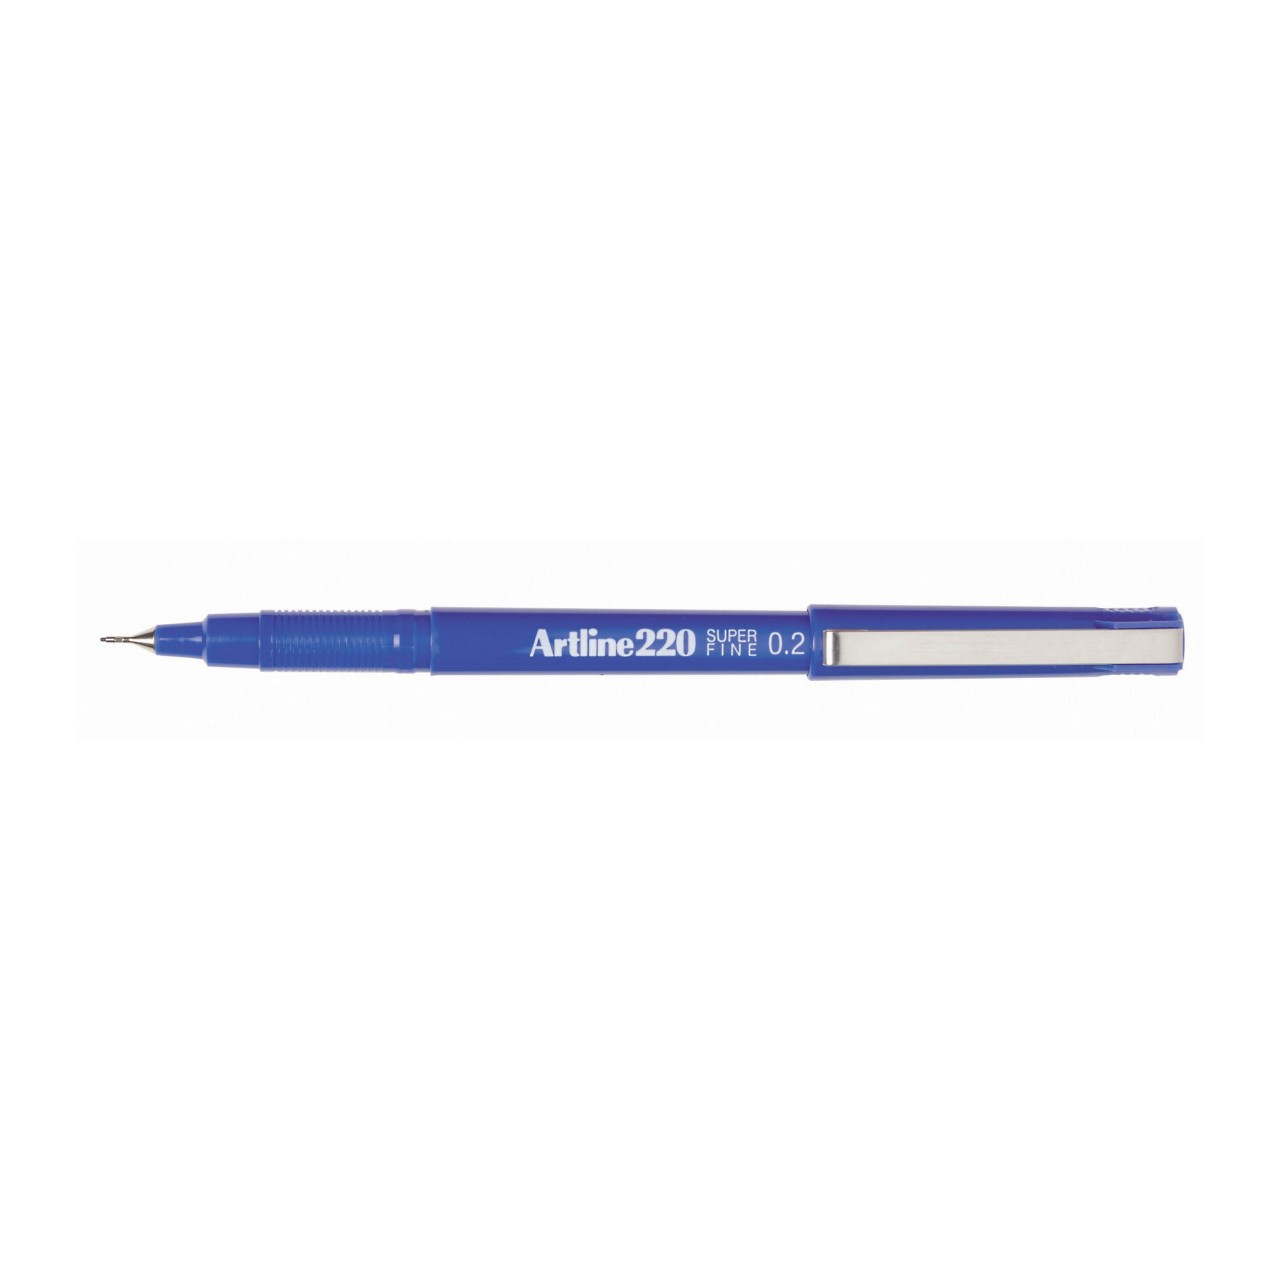 Pen Artline 220 Fineliner 0.2mm Blue (FS)